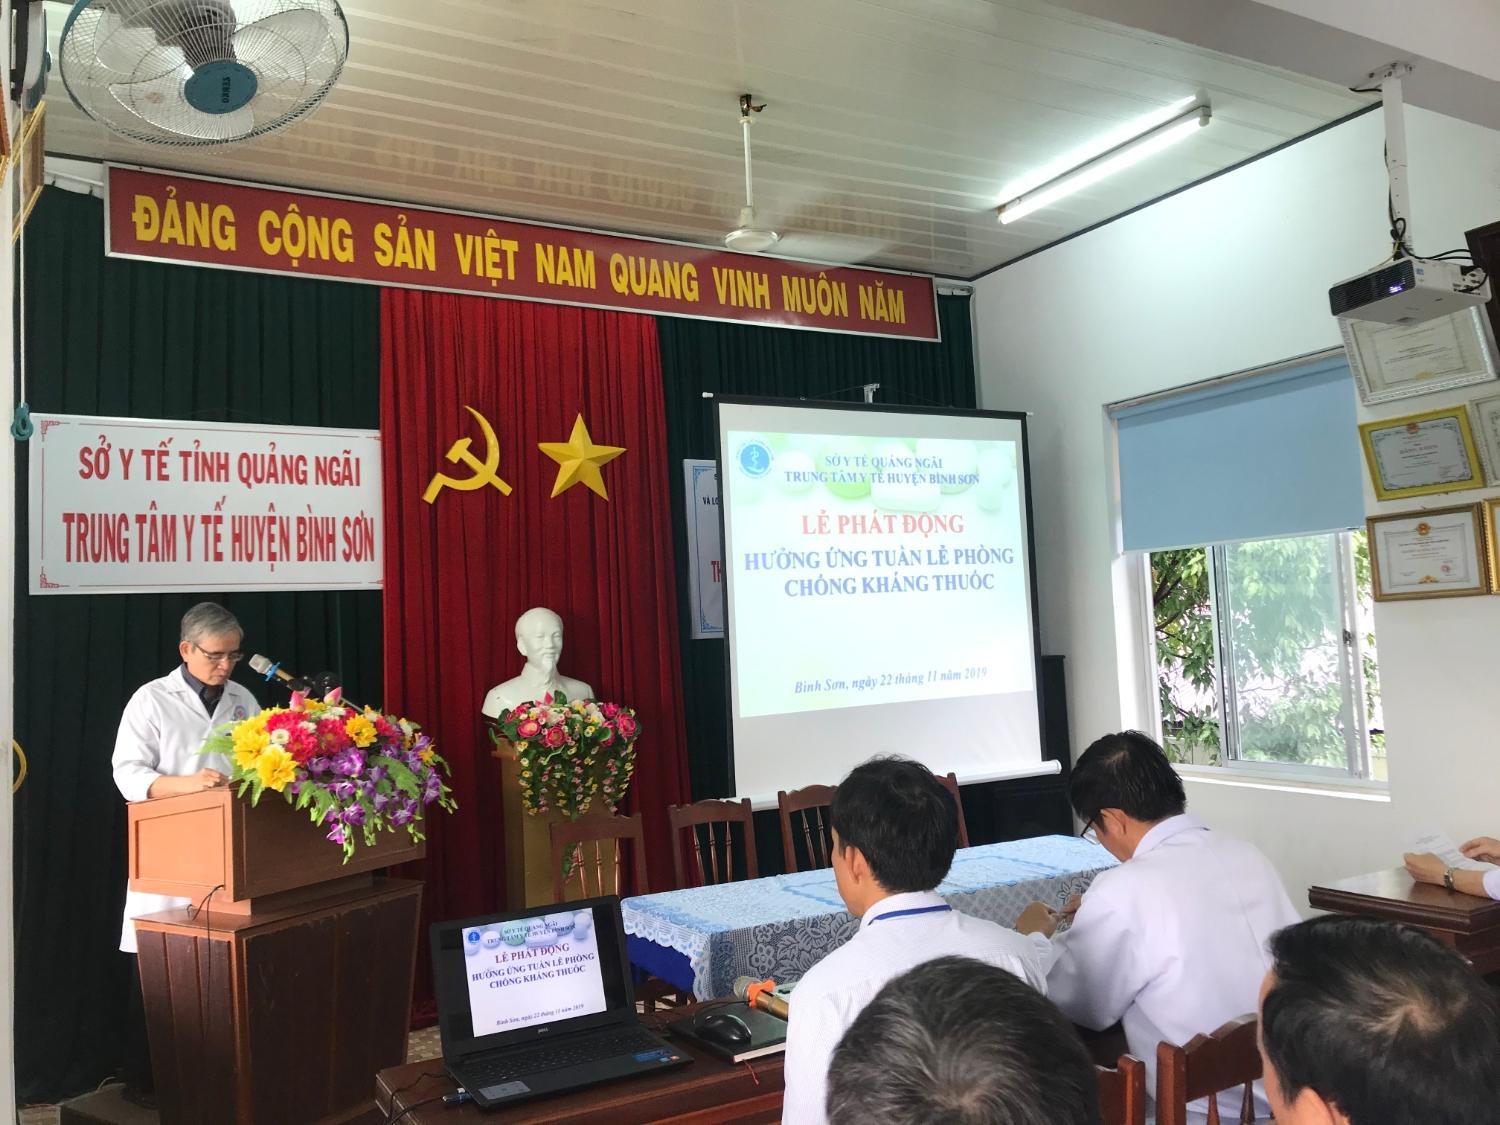 BSCKI.Trần Liễu – PGĐ Trung tâm Y tế huyện Bình Sơn phát biểu tại buổi lễ